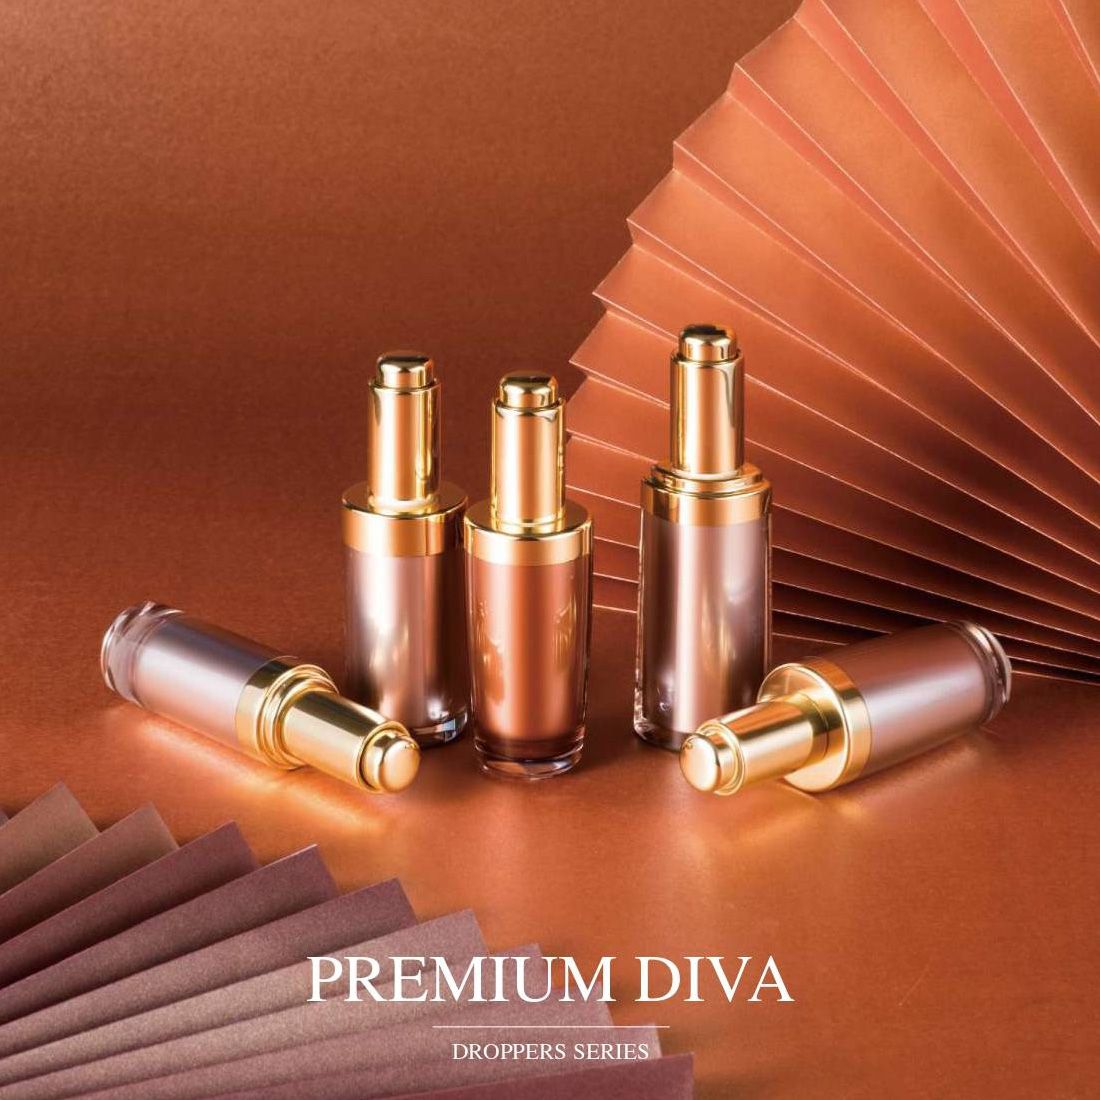 Premium Diva (ambalaj pentru cosmetice și pentru îngrijirea pielii cu picurare acrilice de lux) - Seria Droppers